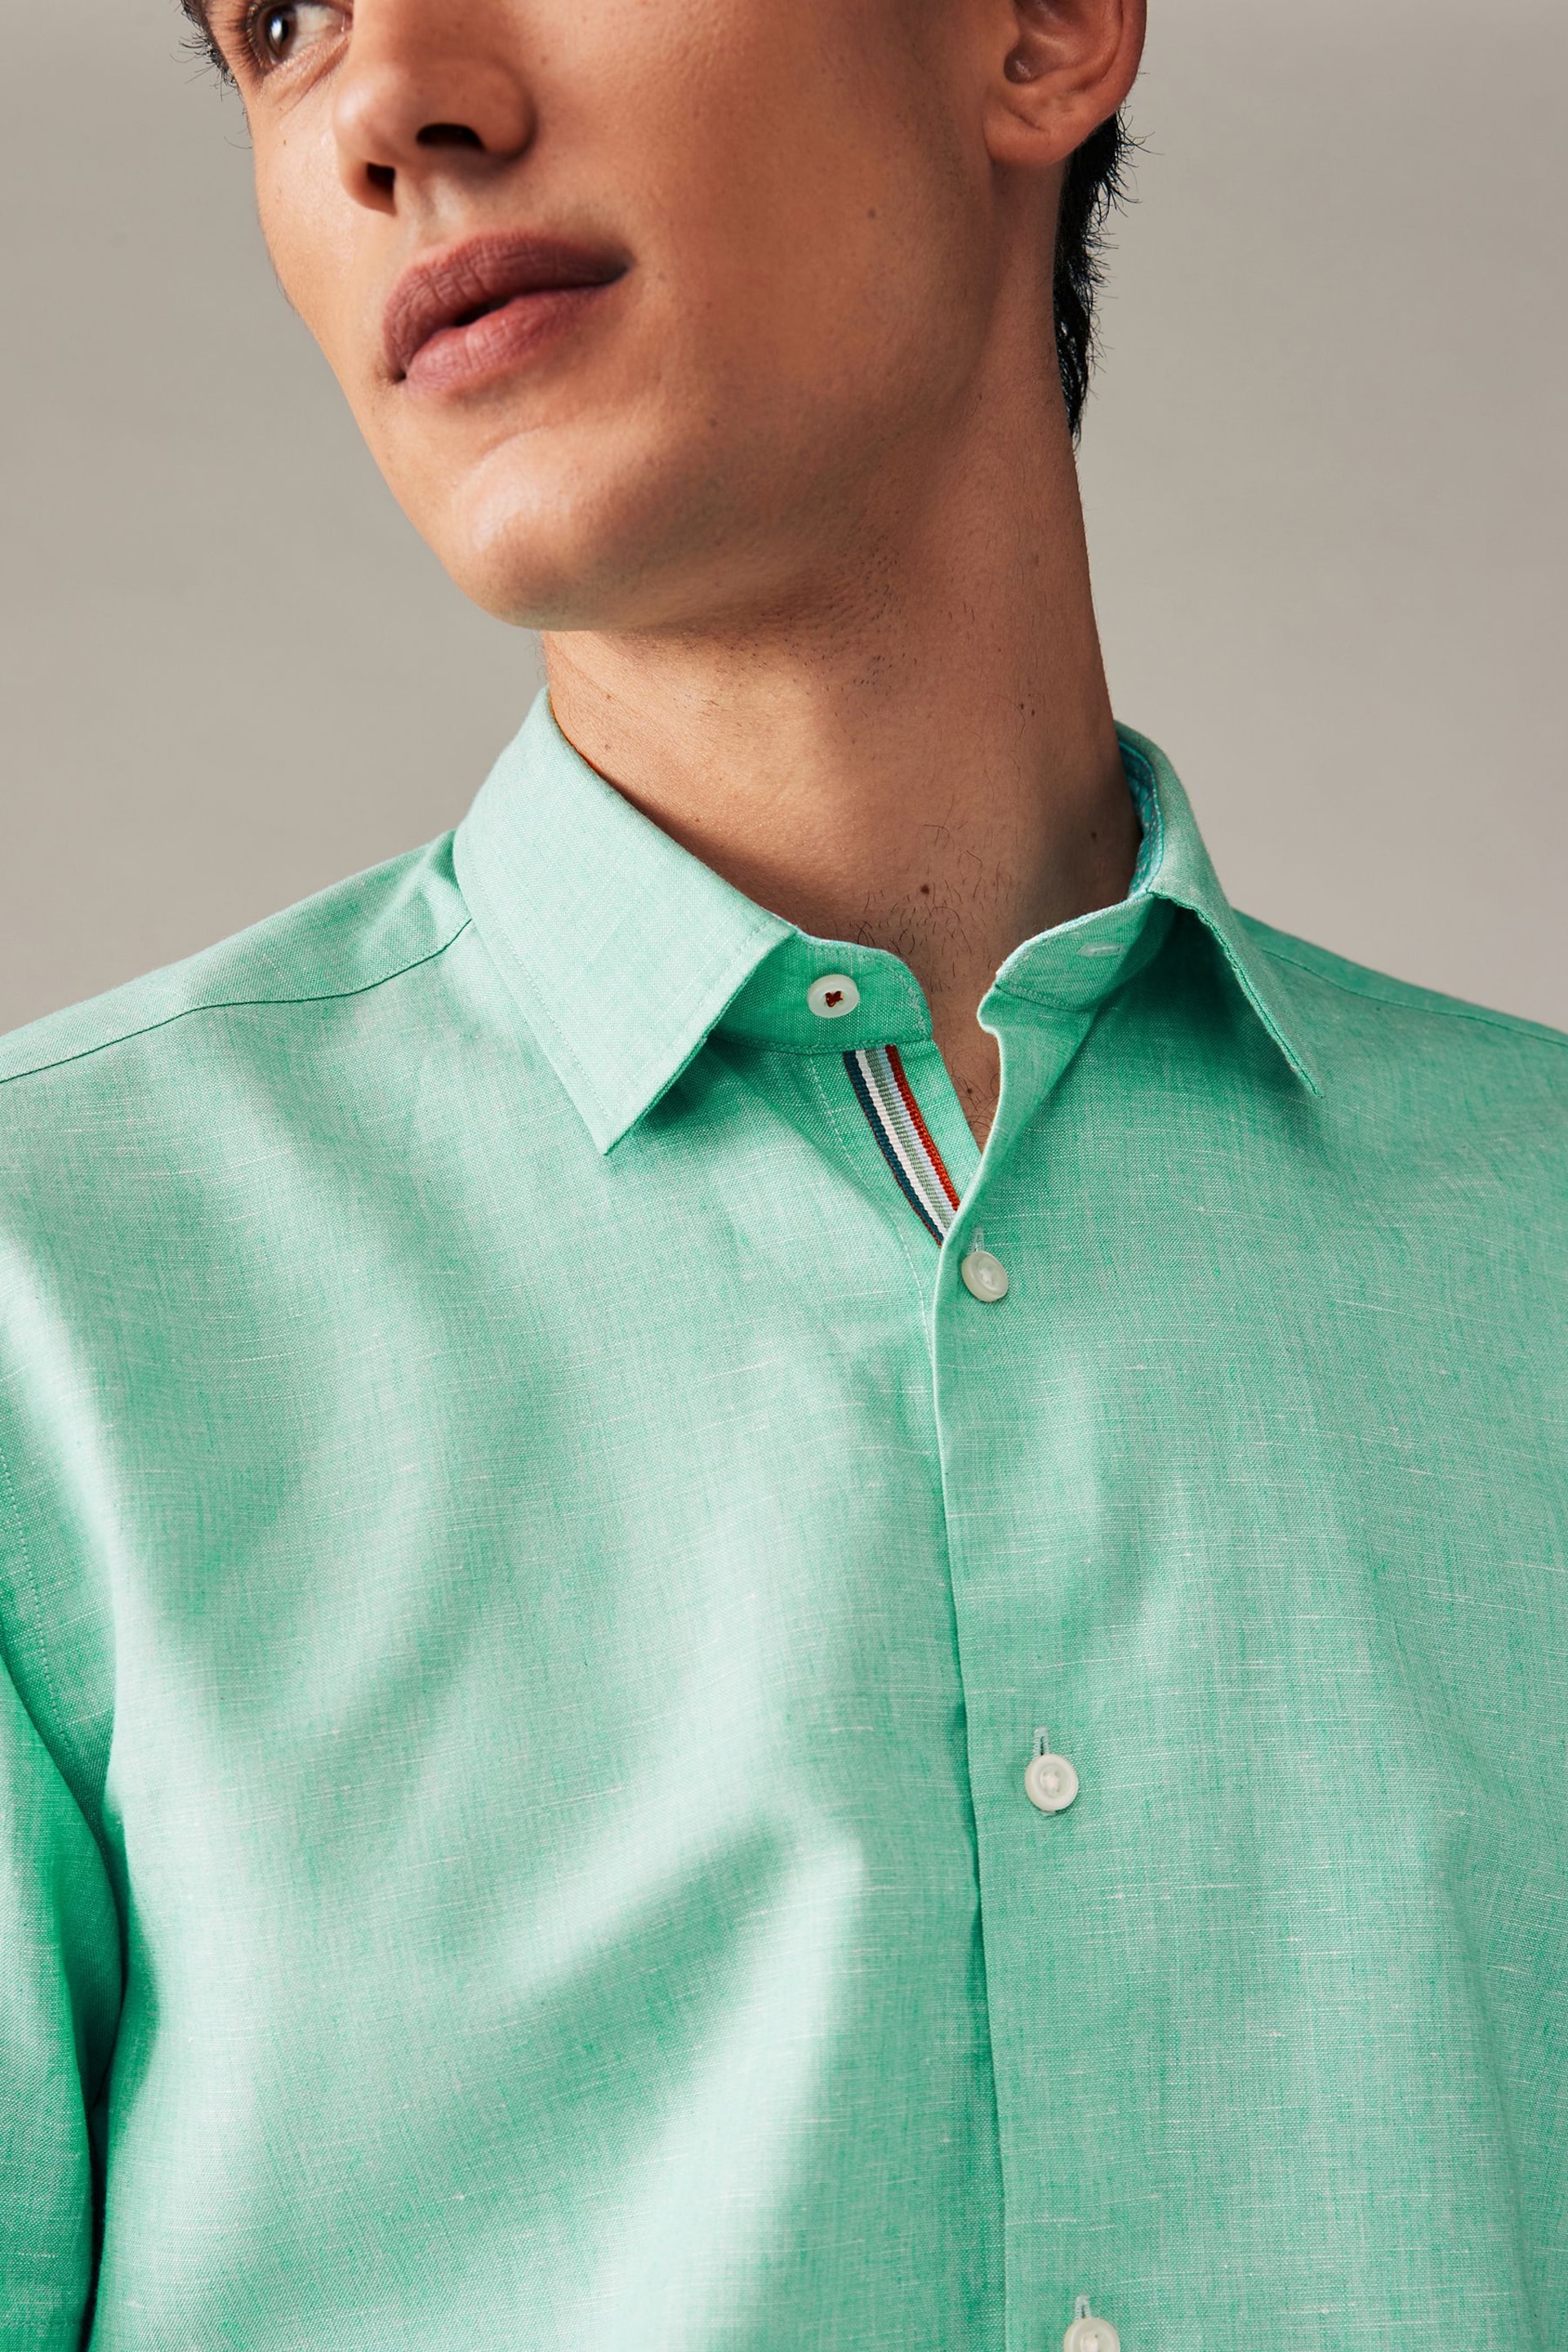 Mint Green Regular Fit Trimmed Linen Blend Short Sleeve Shirt - Image 5 of 8